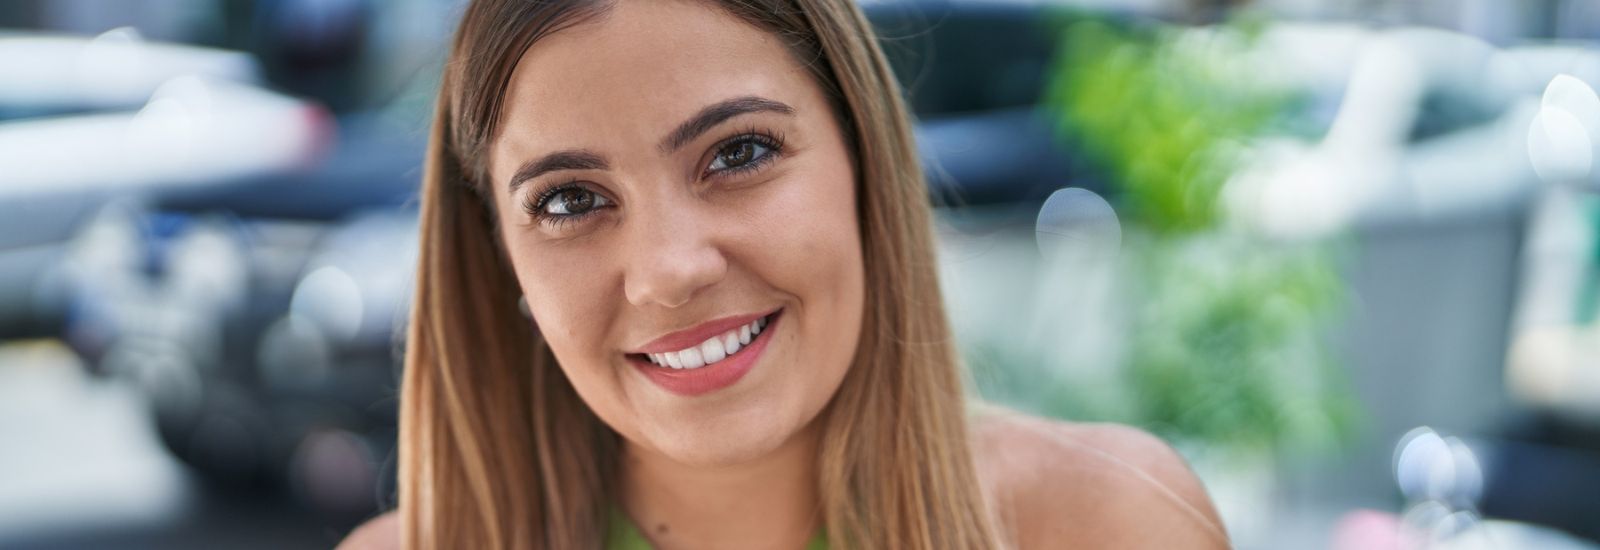 Young beautiful Hispanic woman smiling